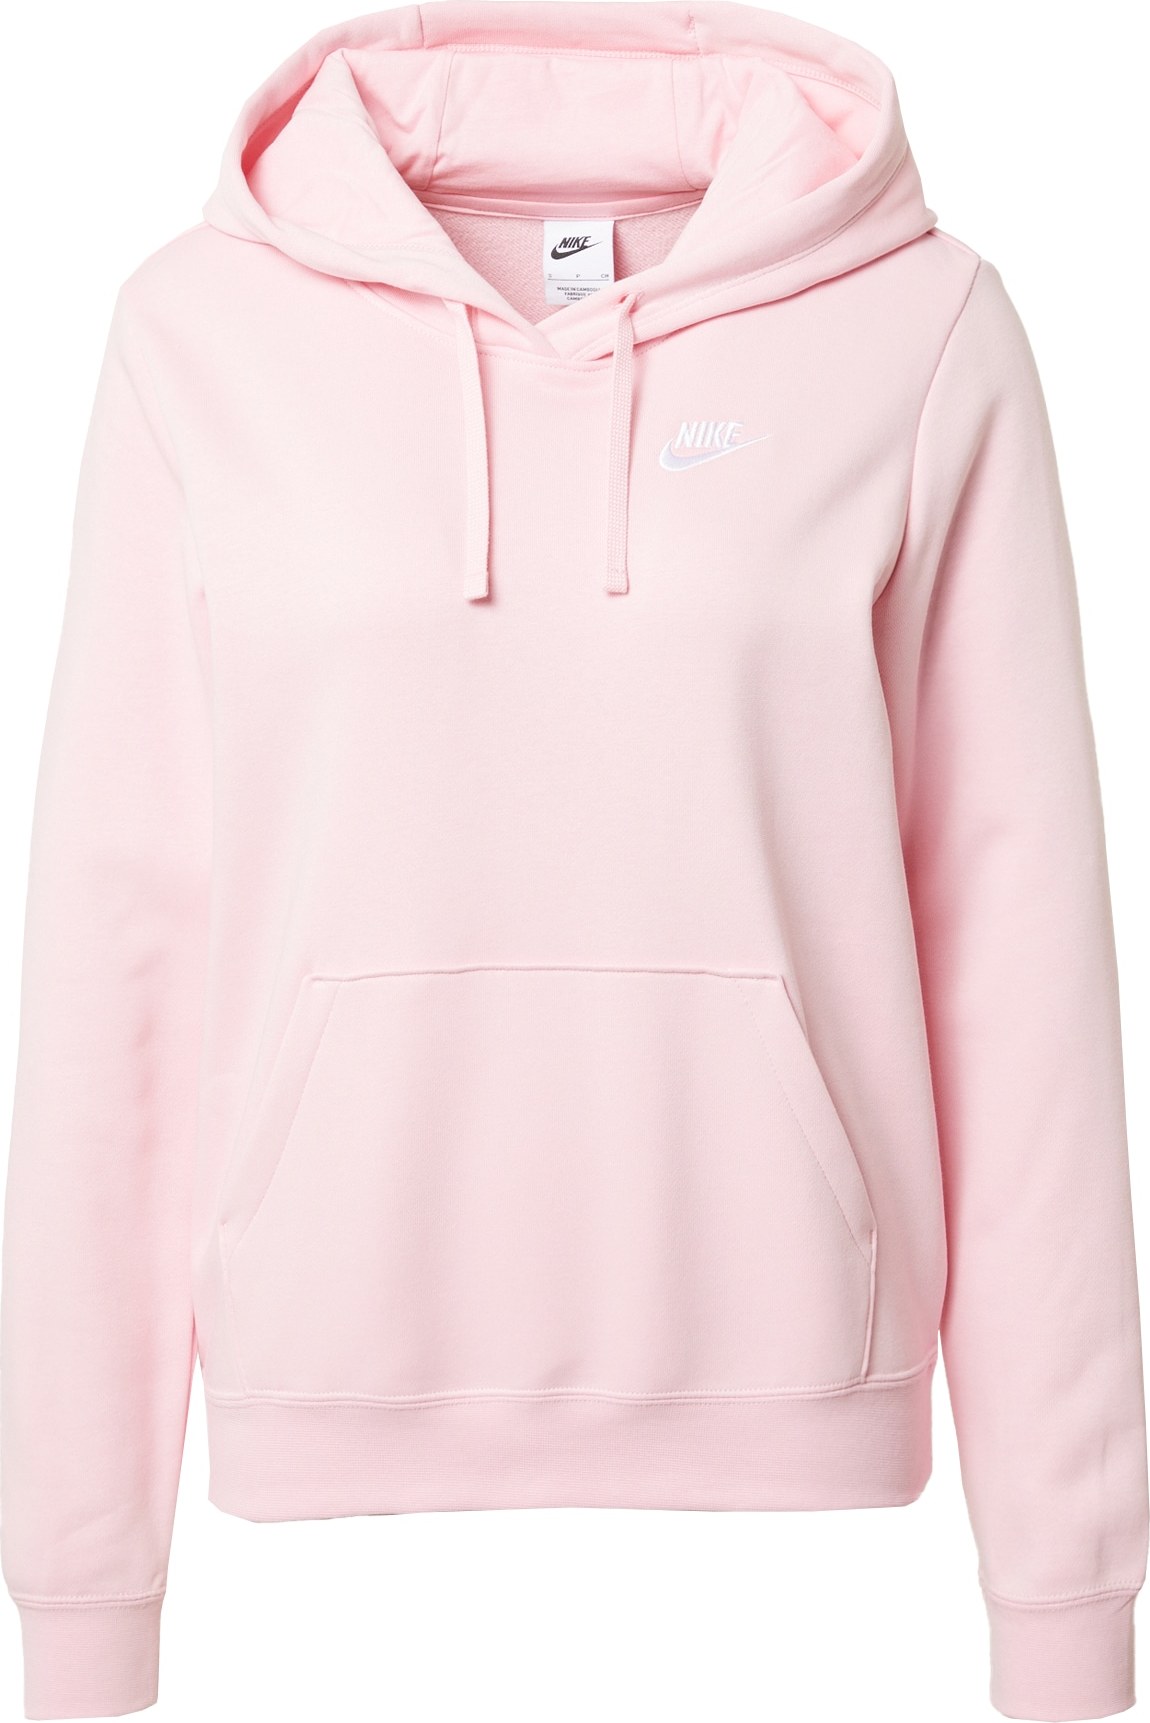 Sportovní mikina Nike Sportswear růžová / bílá